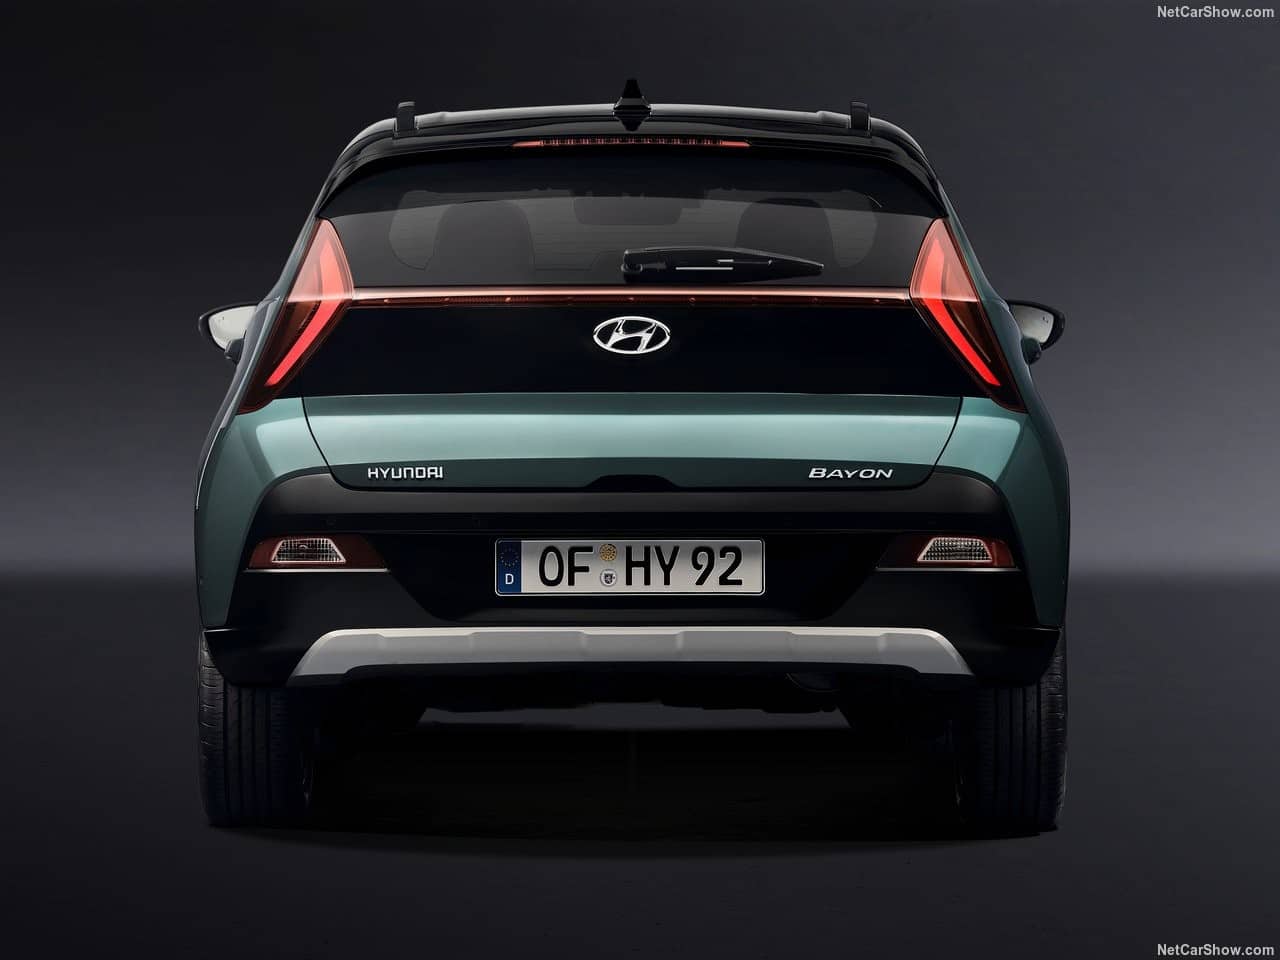 Can xe Hyundai Bayon 2022 Giaxehoi vn 1280x960 1 - Chi tiết xe Hyundai Bayon 2022: Mẫu Crossover mới chính thức “trình làng”